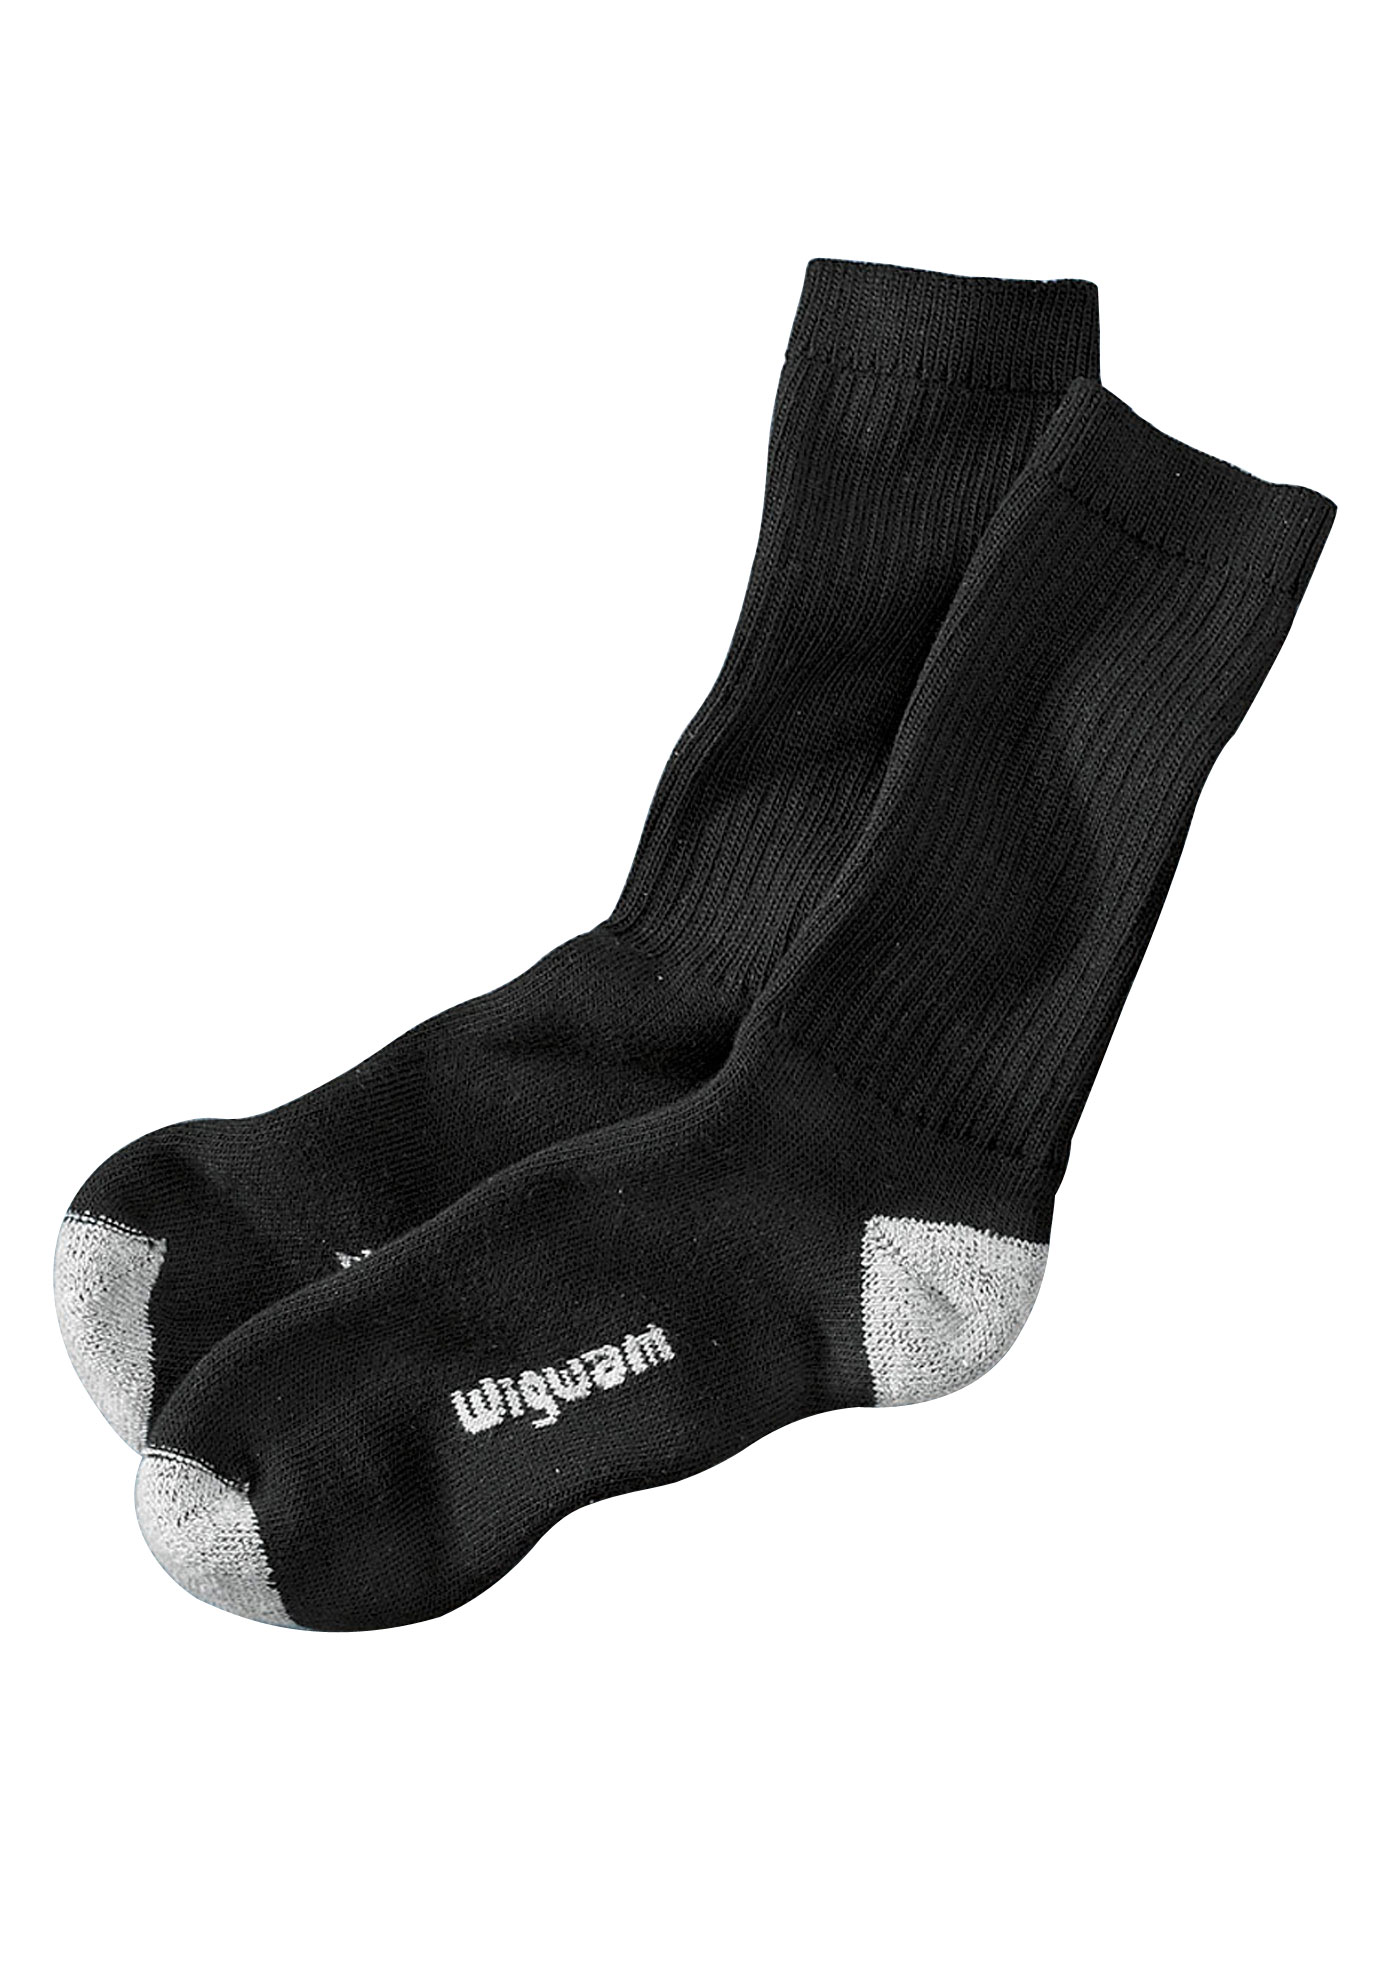 Wigwam® 2-Pack Diabetic Crew Socks, 